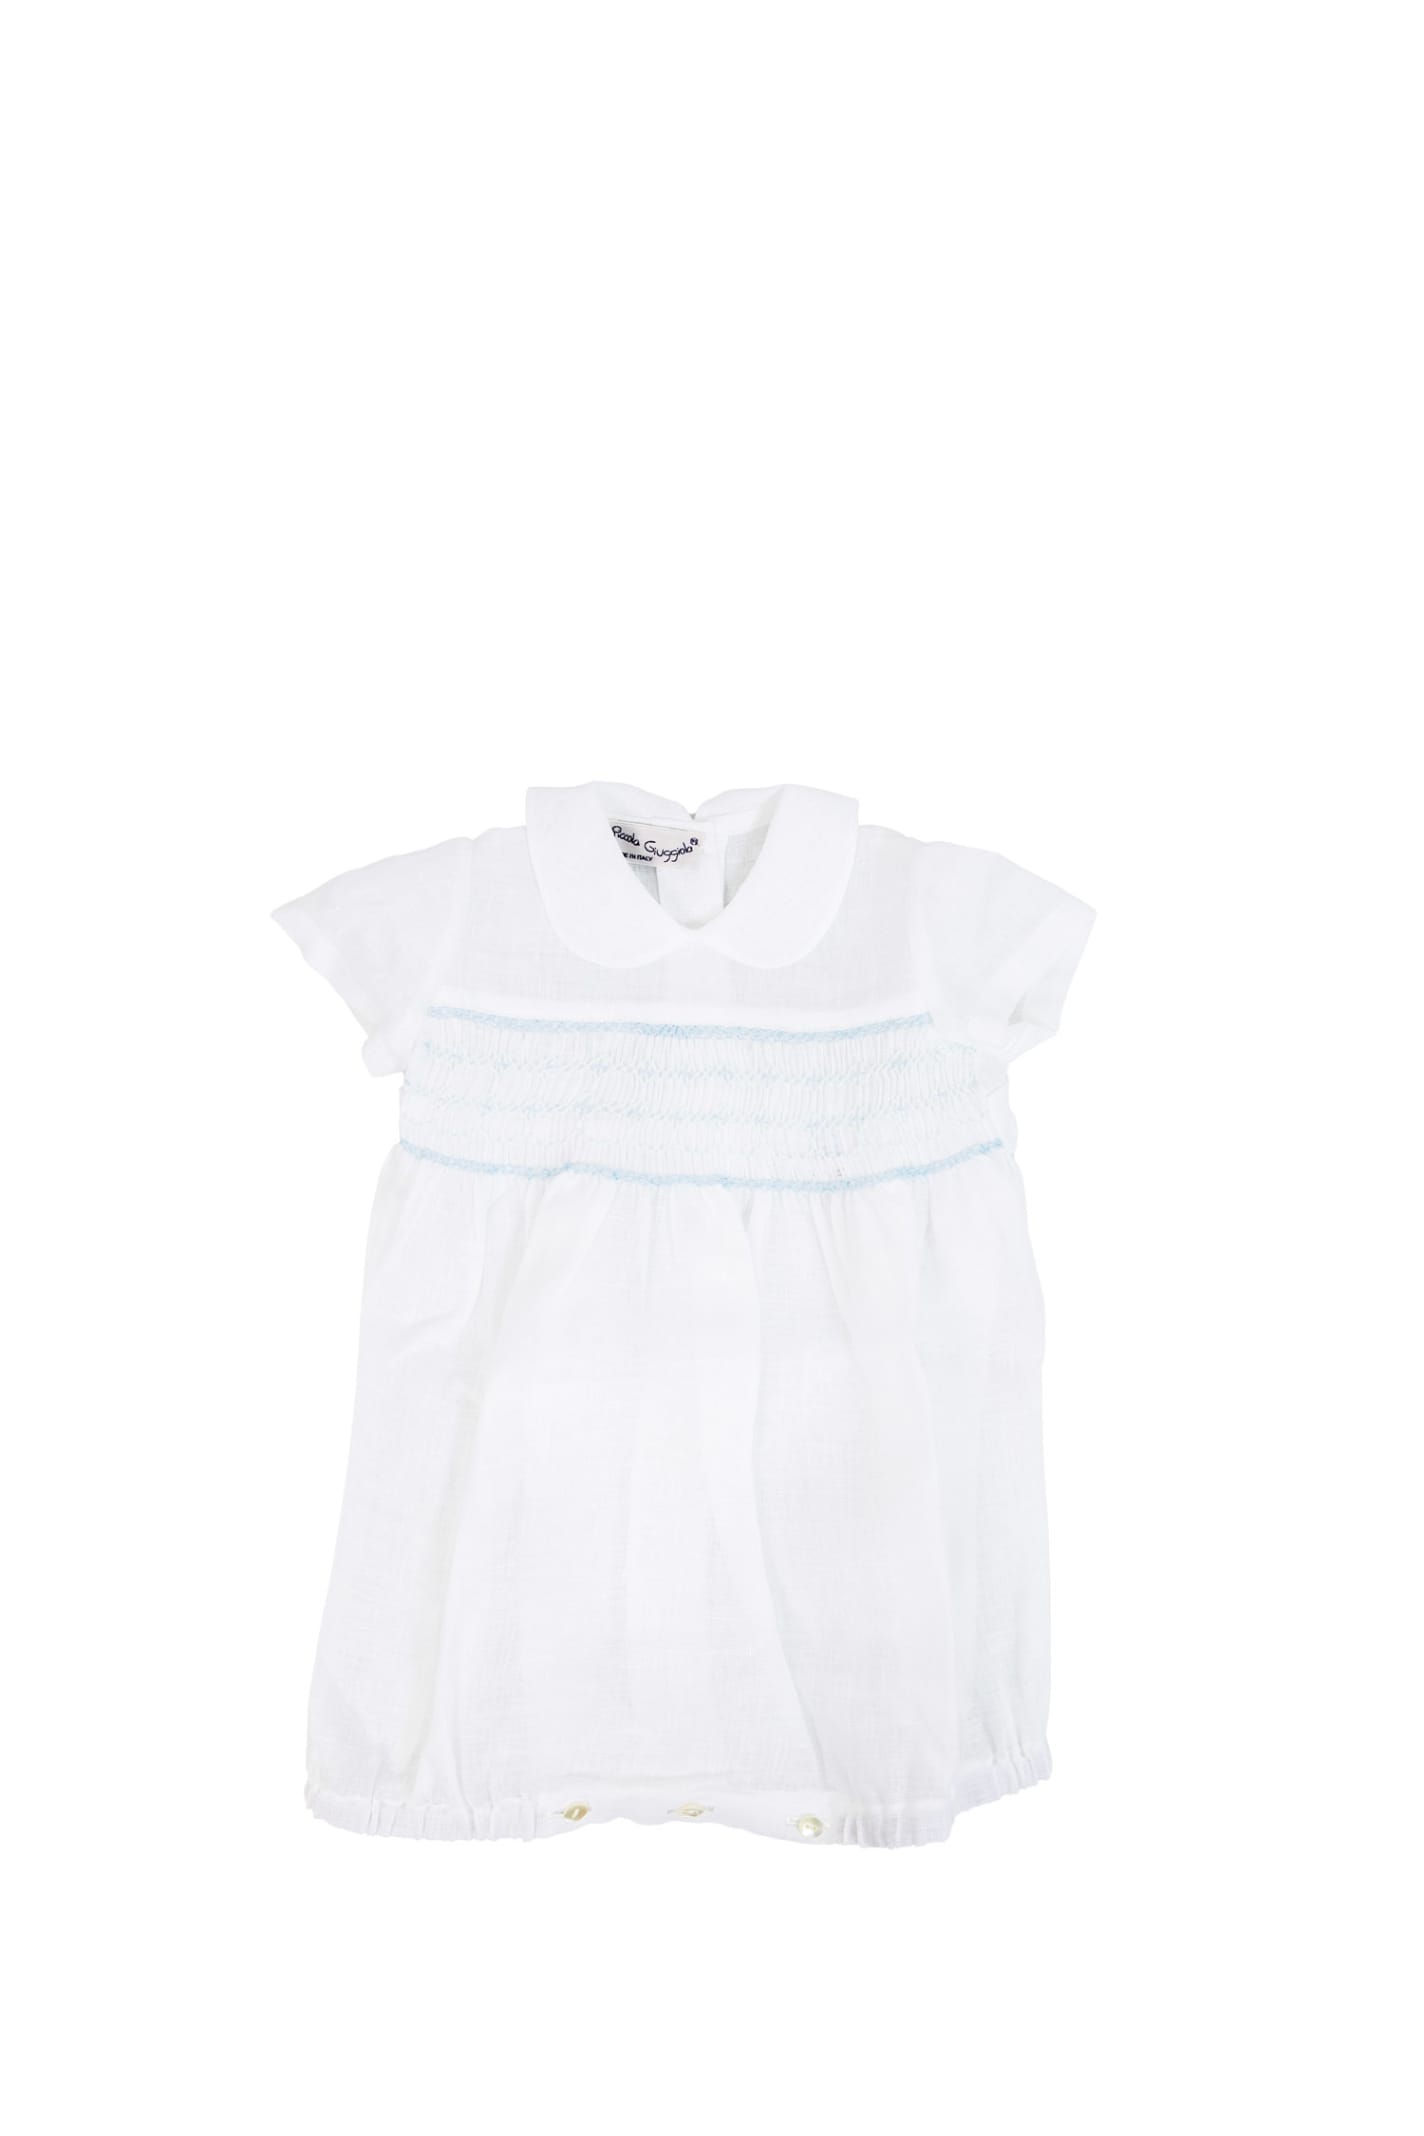 Piccola Giuggiola Babies' Linen Romper In White